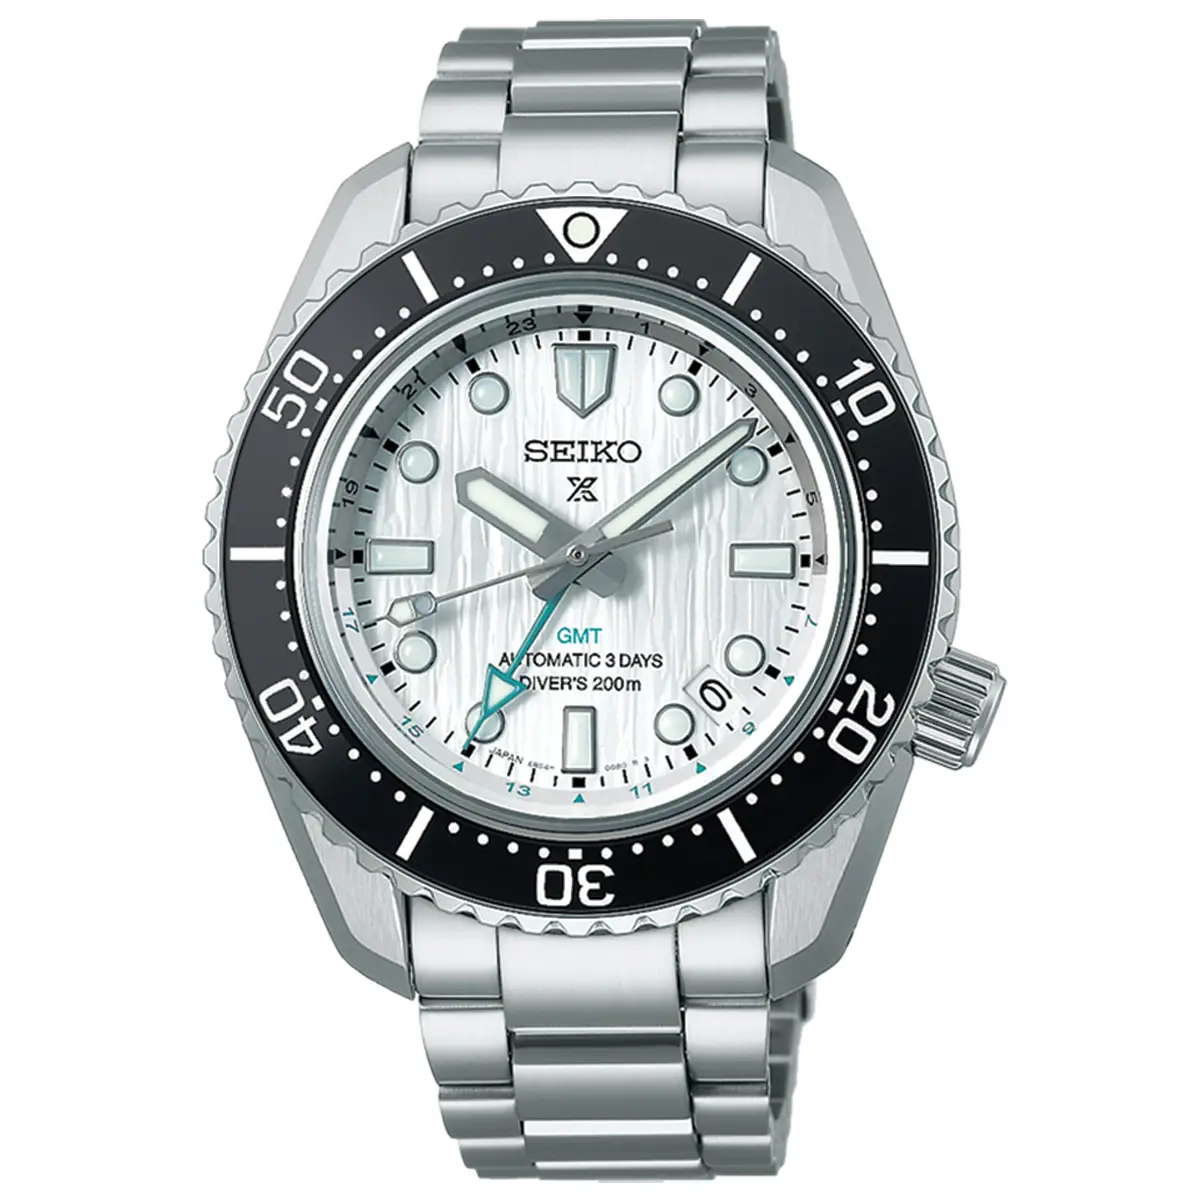 Đồng hồ Seiko Prospex Diver Scuba Limited Edition SBEJ019 mặt số màu bạc. Dây đeo bằng thép. Thân vỏ bằng thép.